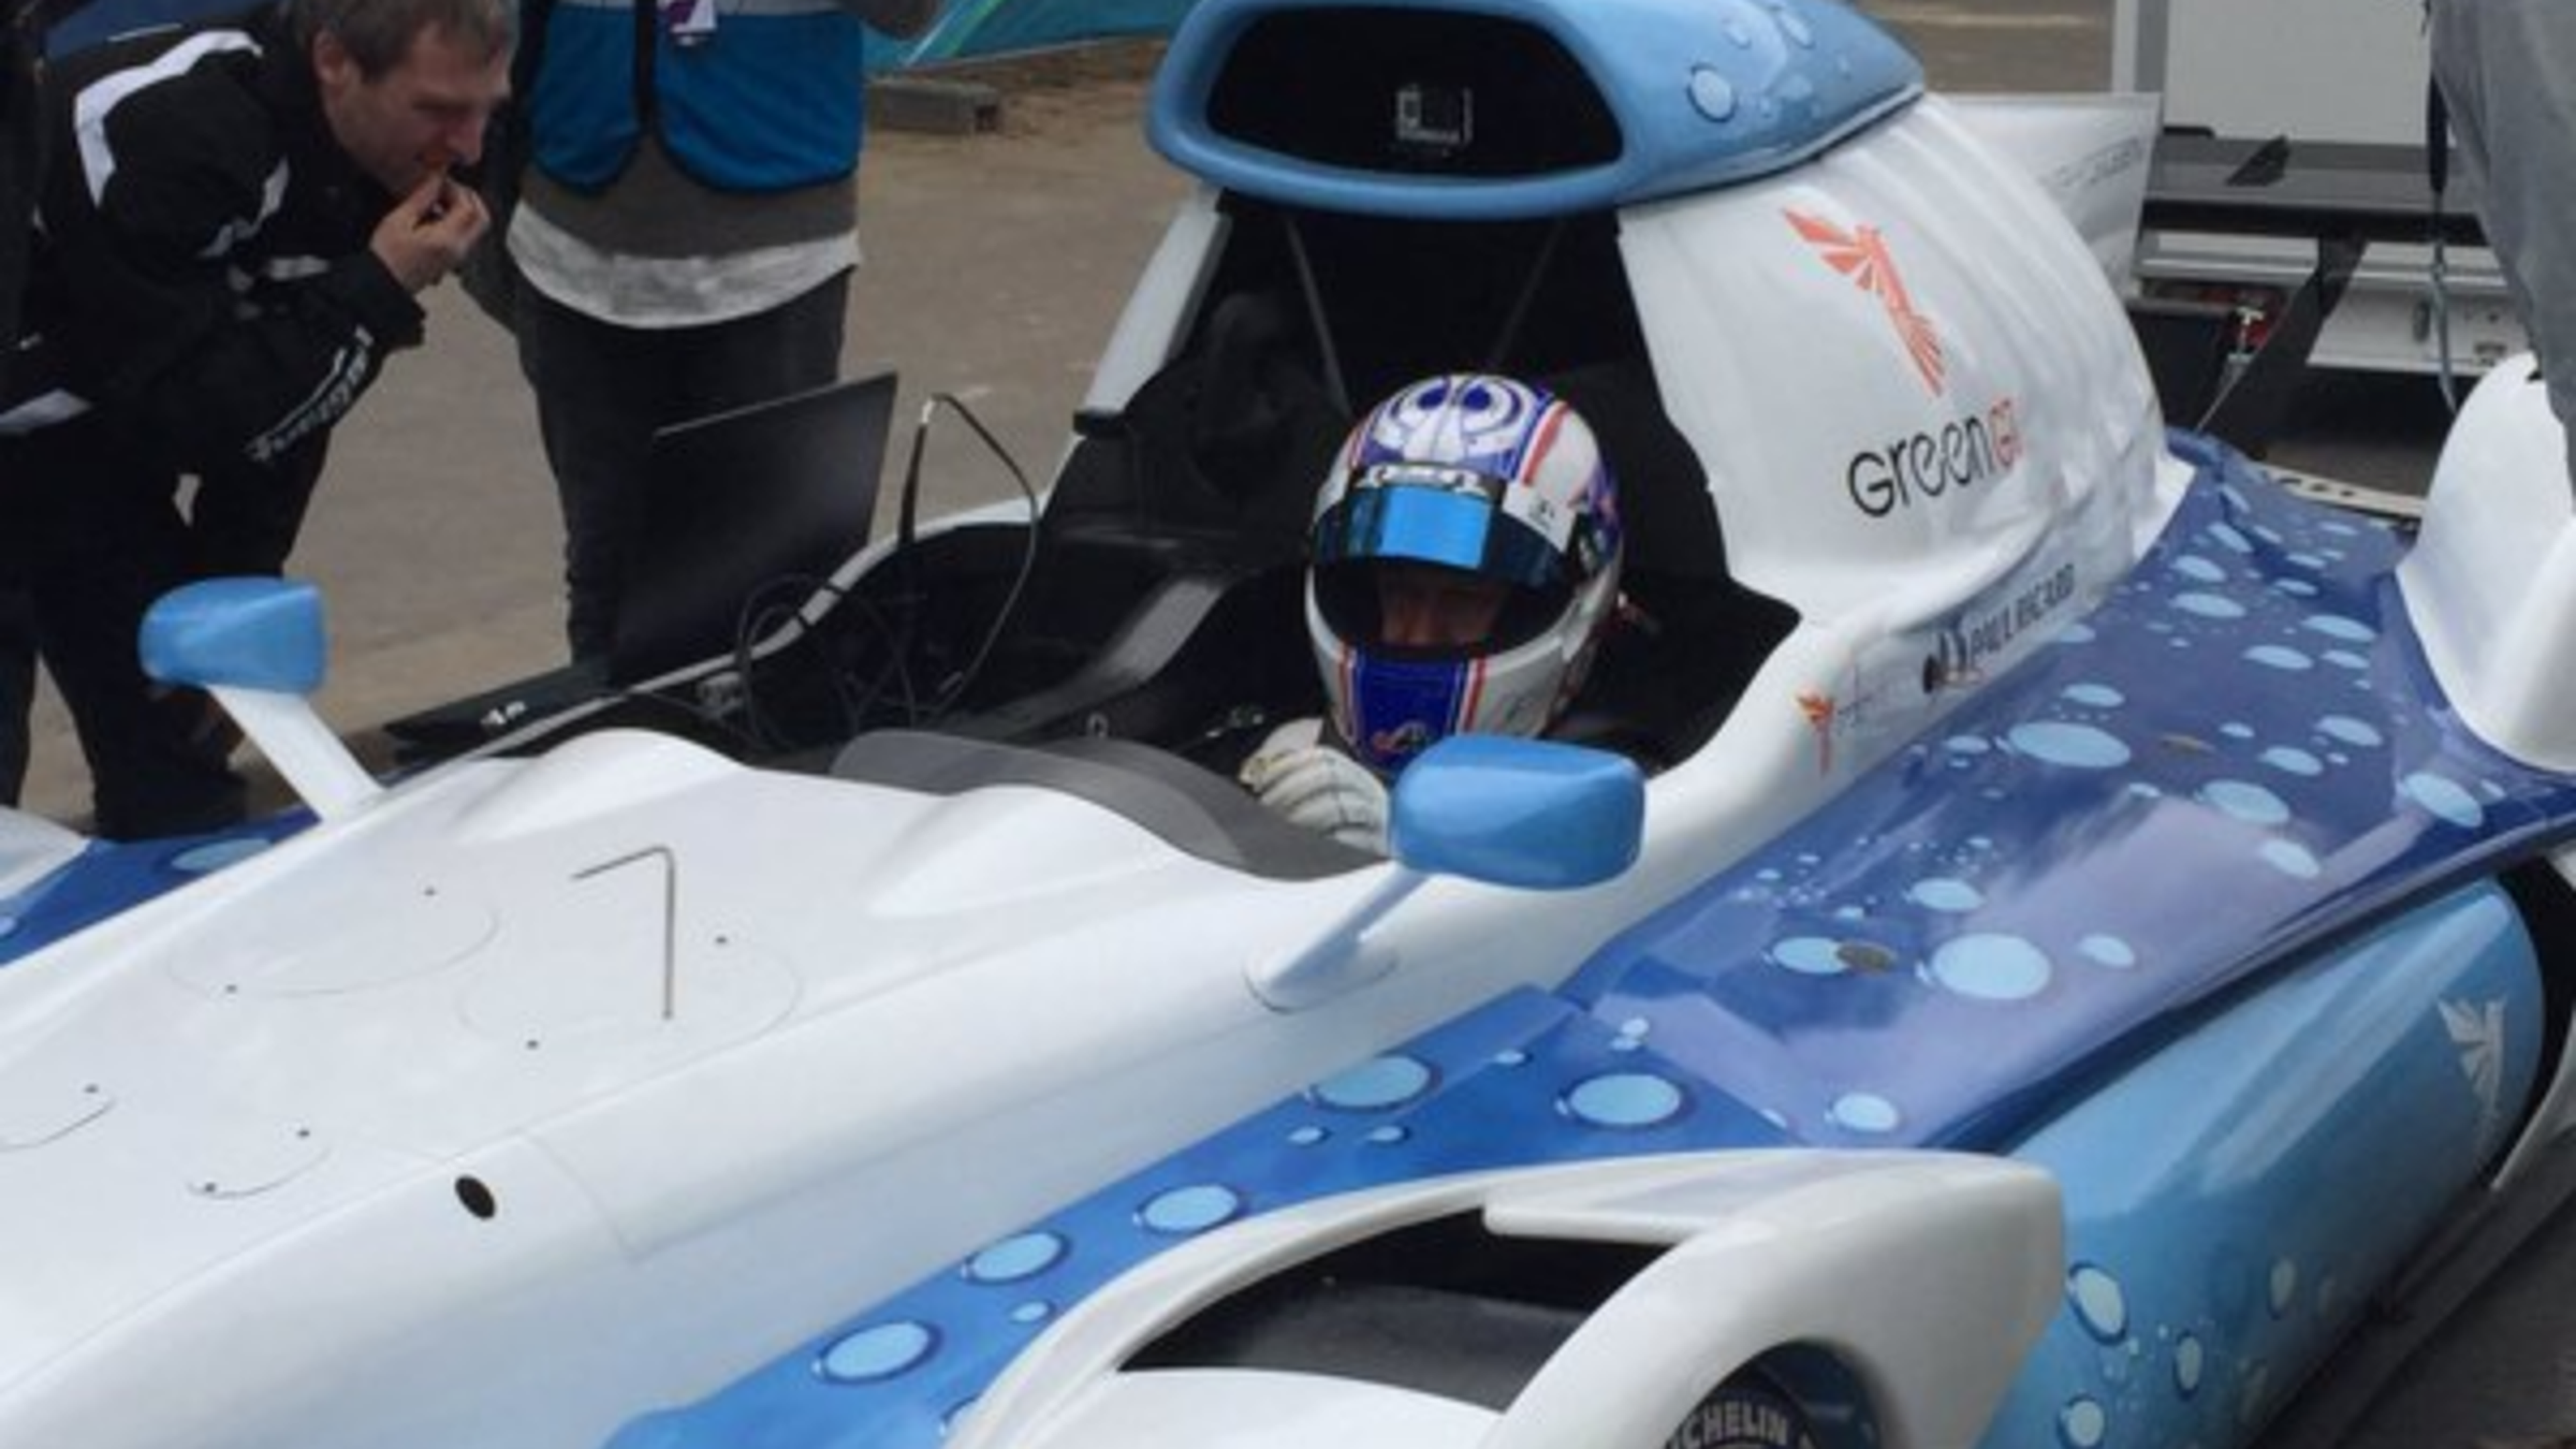 24H Le Mans 2016: Primer coche de hidrógeno en La Sarthe